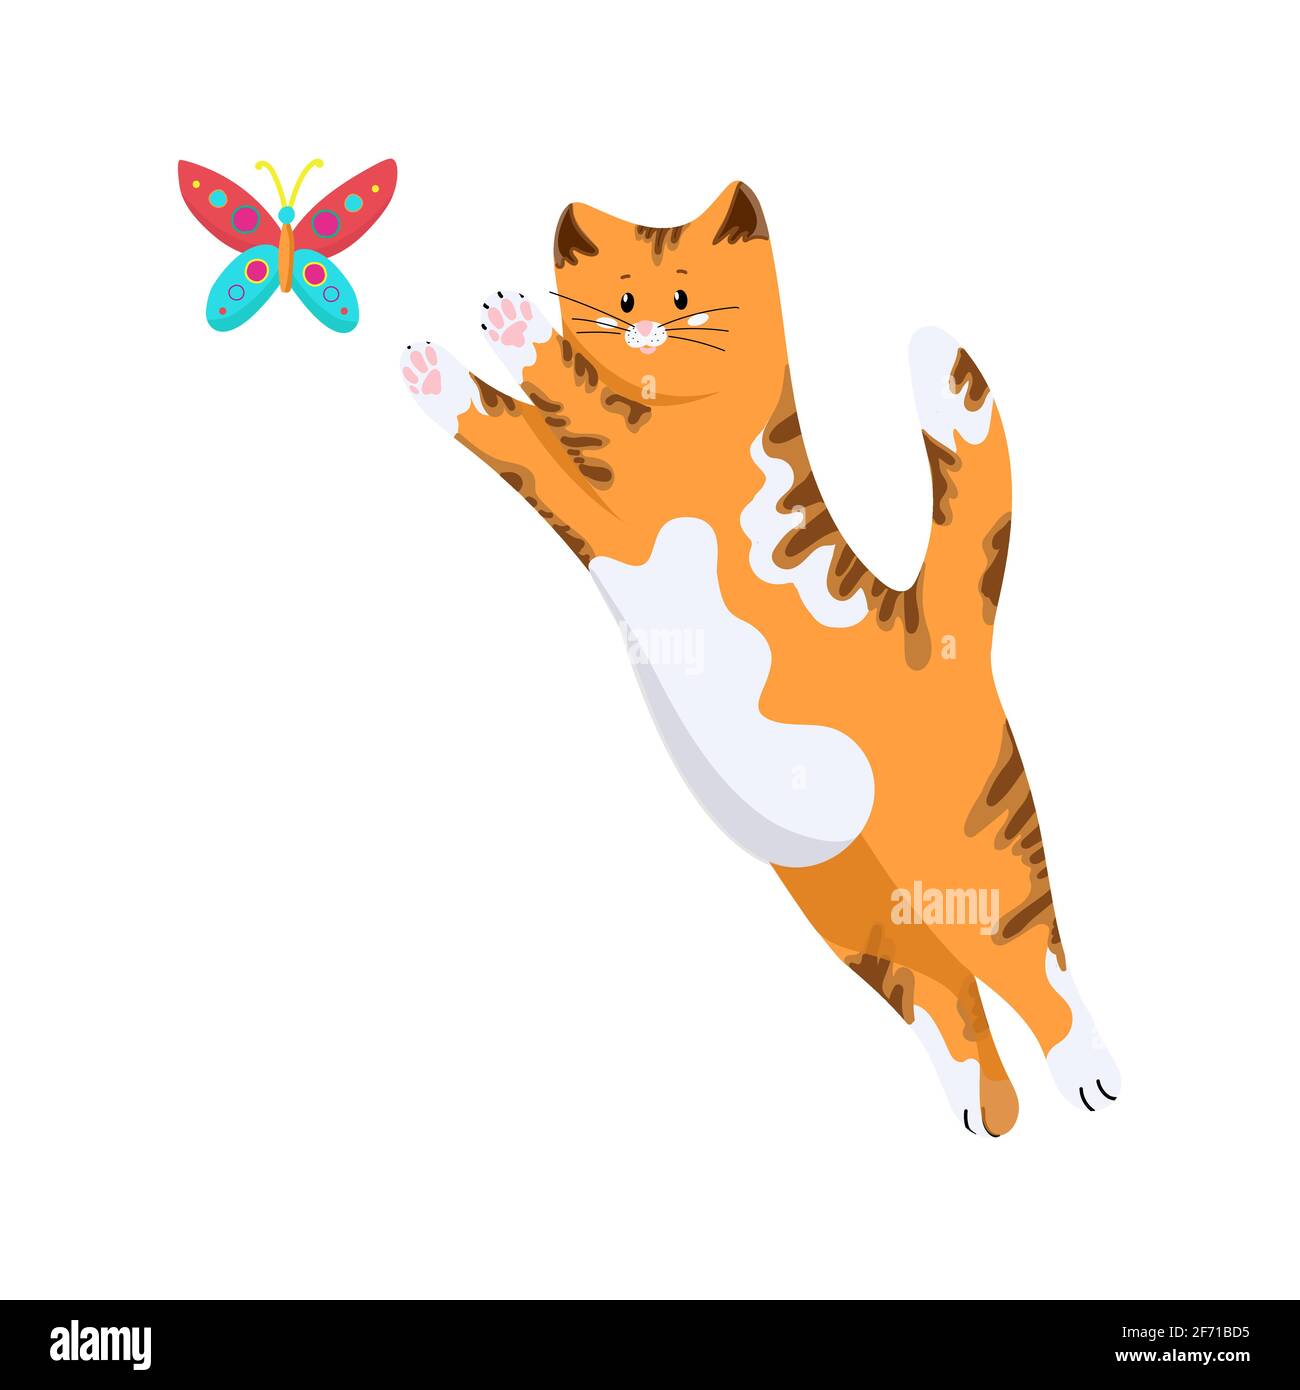 Rote Katze springt für einen farbigen Schmetterling, nette Zeichentrickfigur, Haustier, Gruppe von Vektorobjekten isoliert auf weißem Hintergrund, Handzeichnung. Stock Vektor